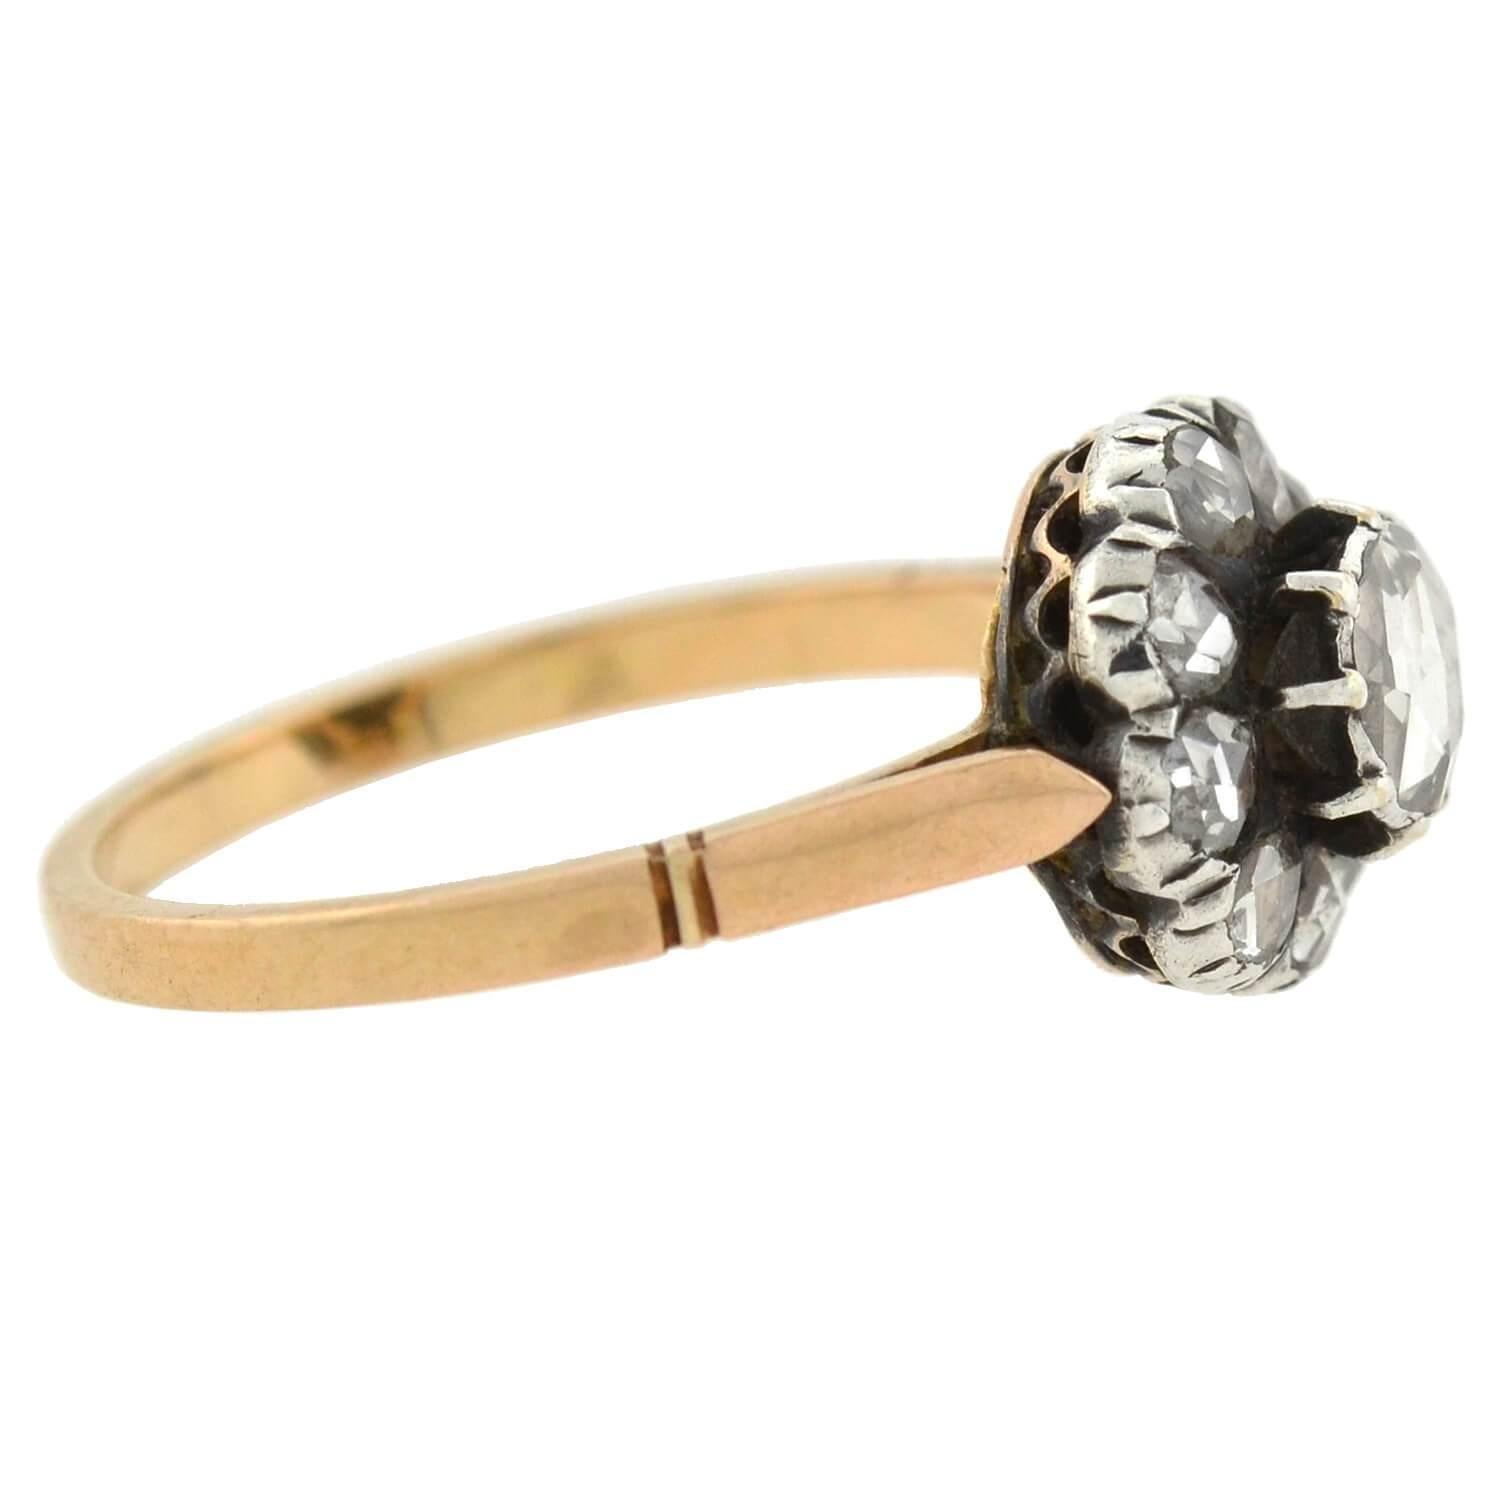 Ein schöner Diamant-Cluster-Ring aus der viktorianischen Ära (ca. 1880)! Das Design aus gemischten Metallen kombiniert ein Band aus 14-karätigem Gold mit einem Mittelstück aus Sterlingsilber, wodurch ein schöner 2-Ton-Effekt entsteht. Den Mittelteil